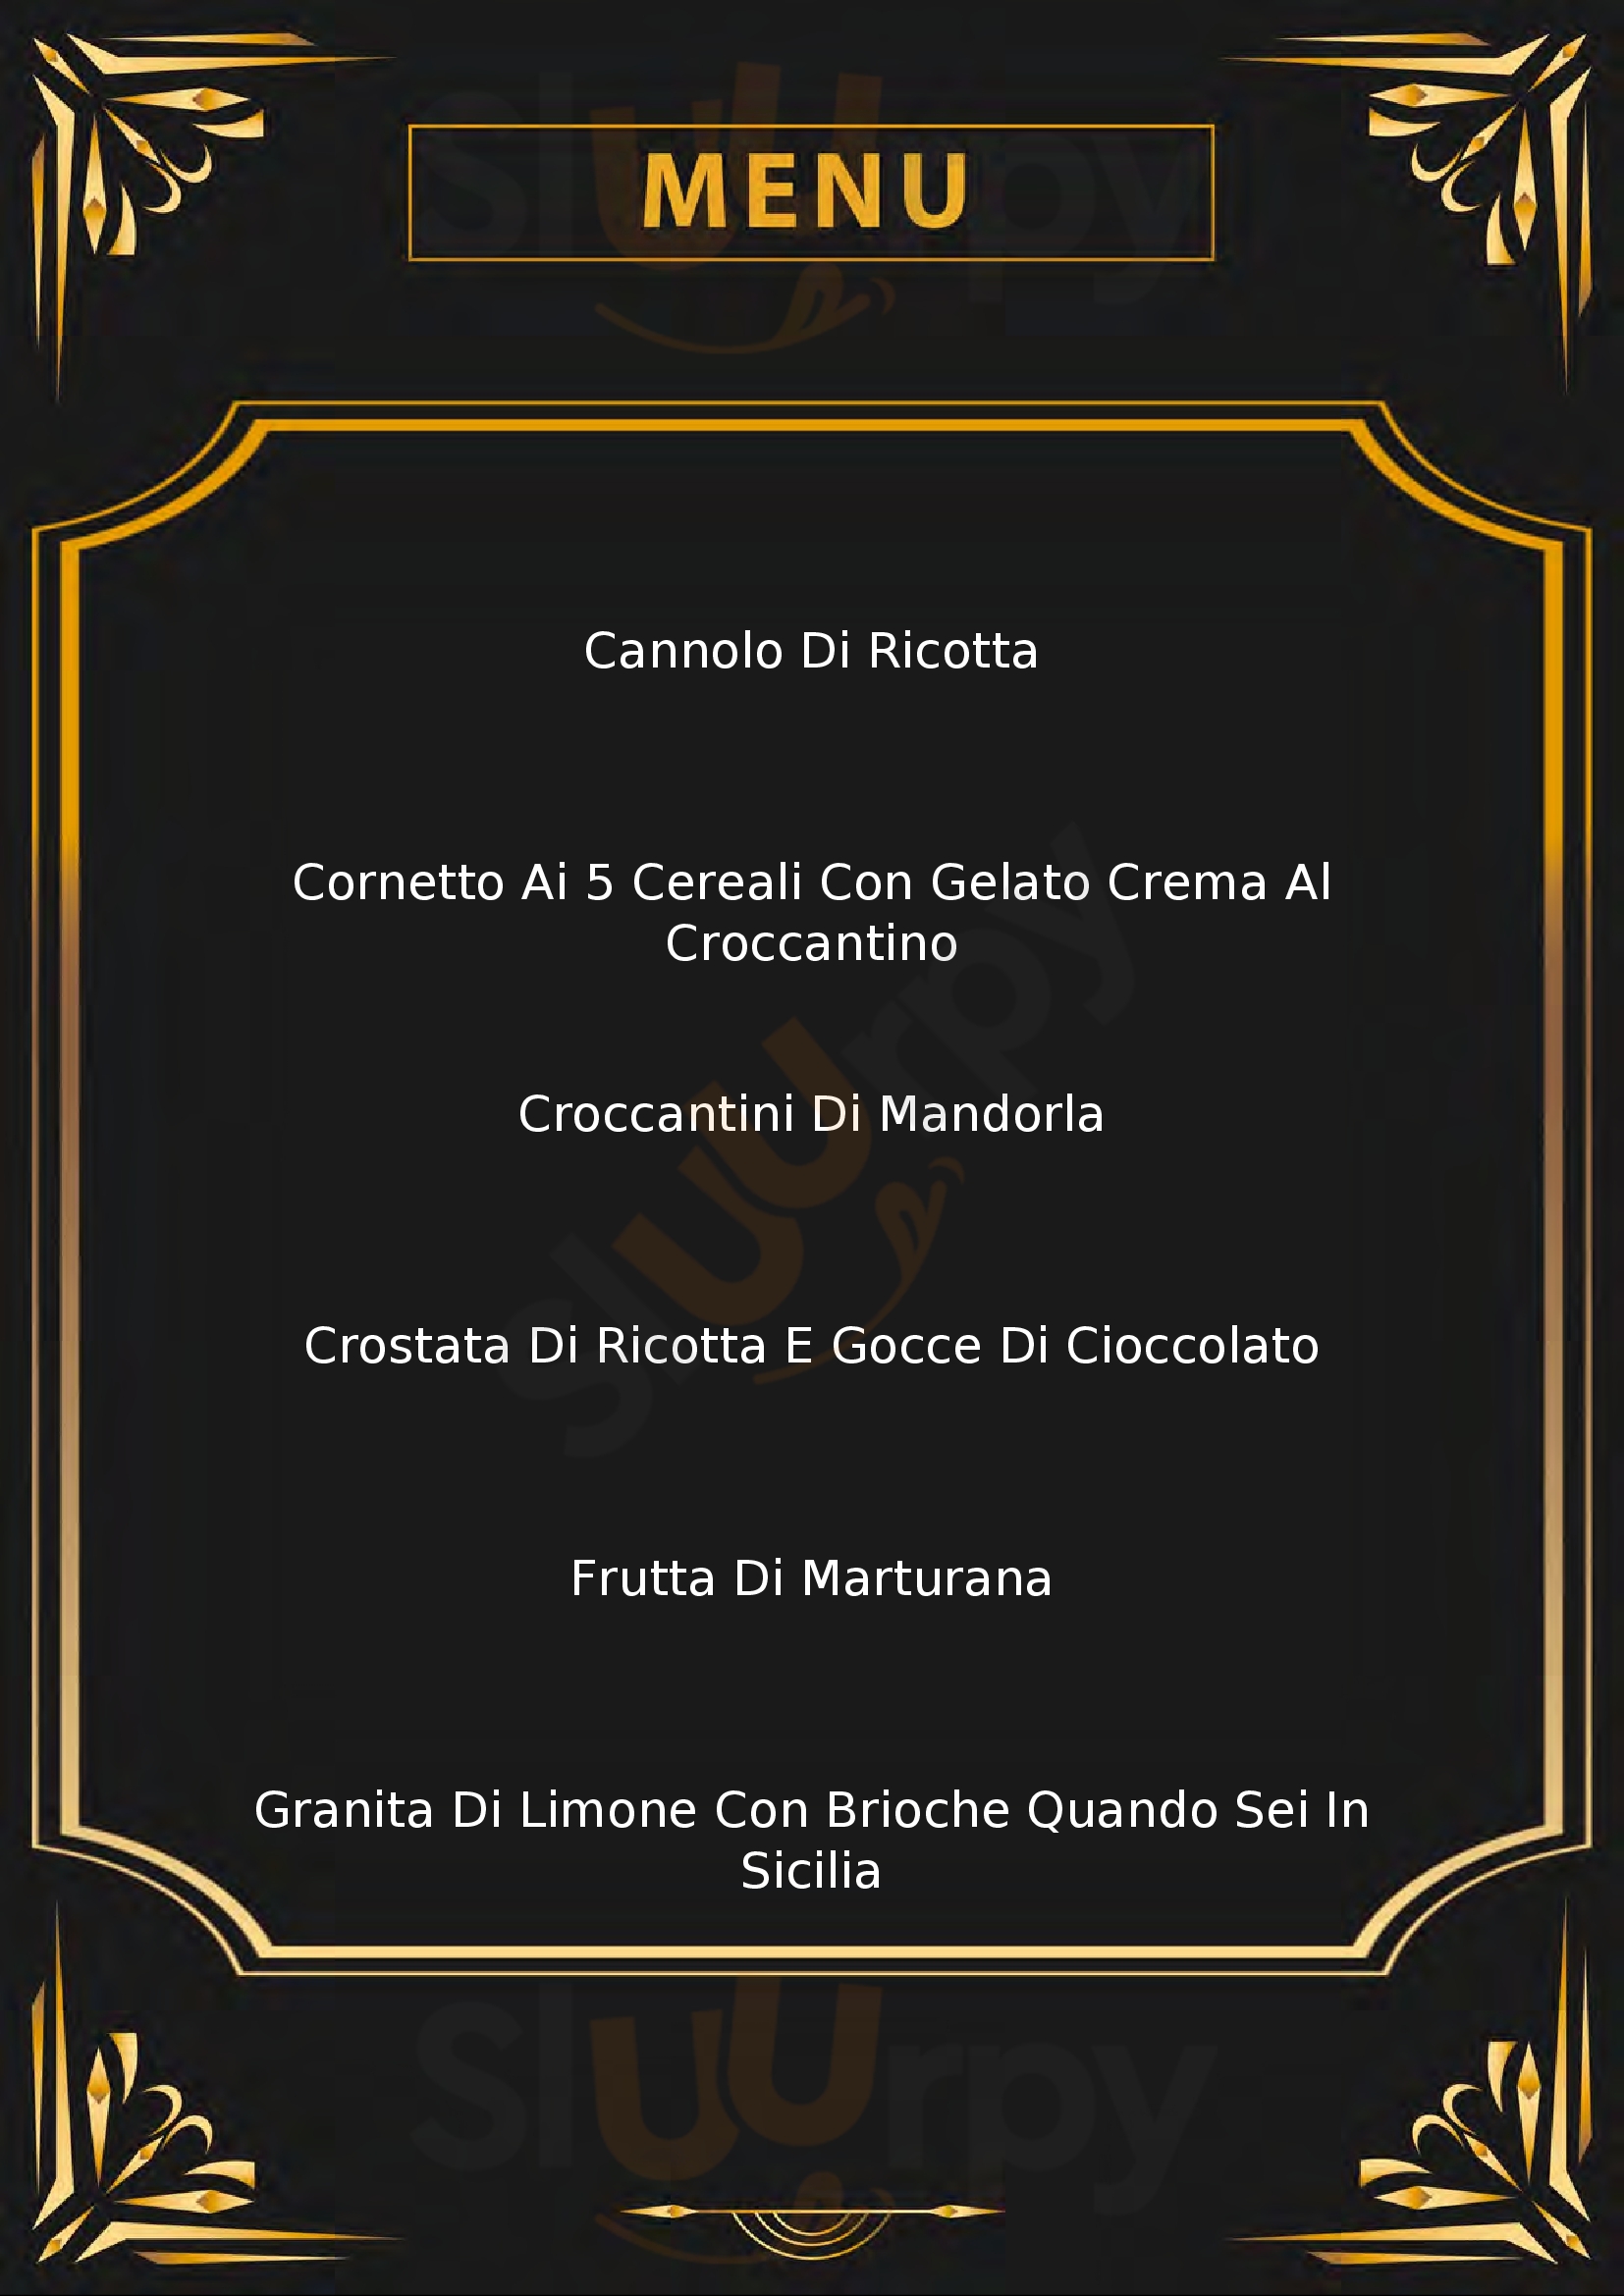 Pasticceria Carusotto Giacinto Canicatti menù 1 pagina